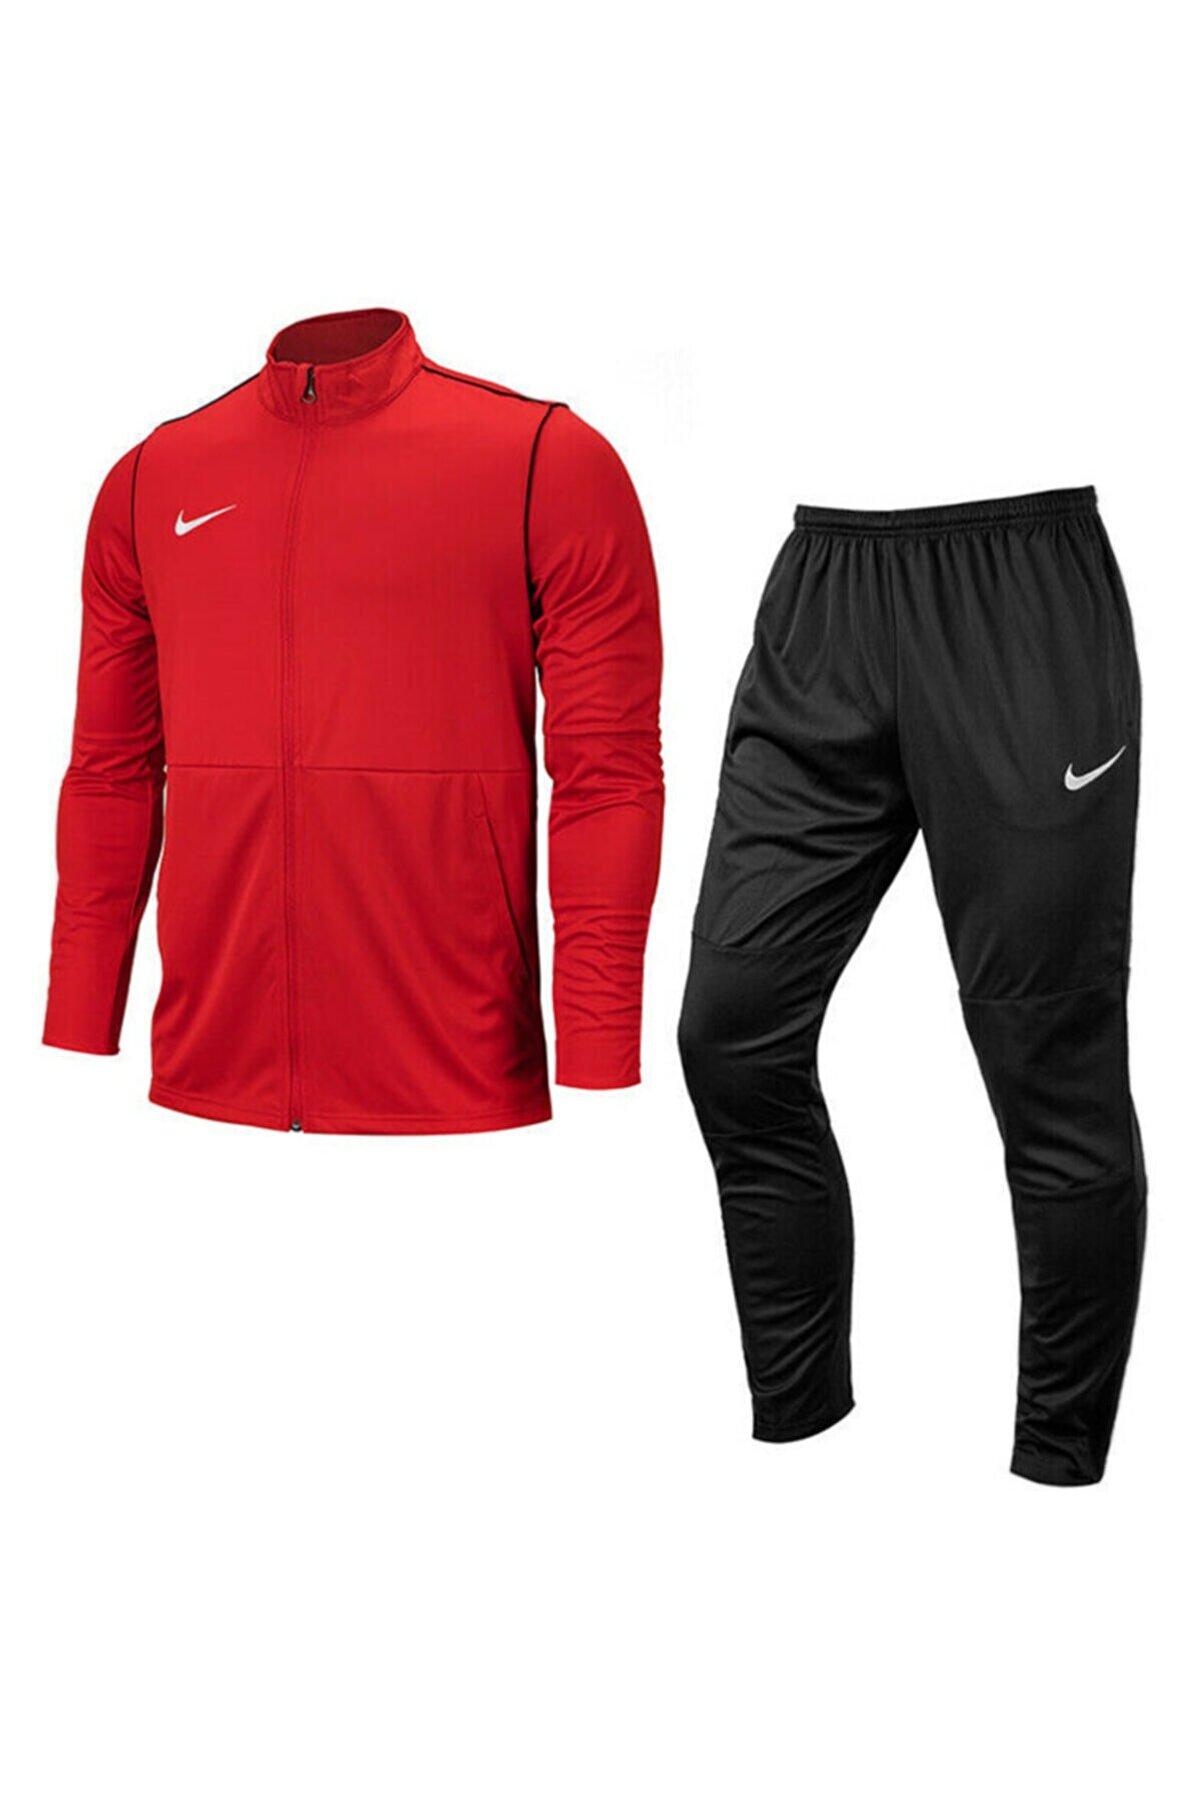 Nike Dry Fit 20 Erkek Kırmızı Siyah Eşofman Takımı Bv6887-657